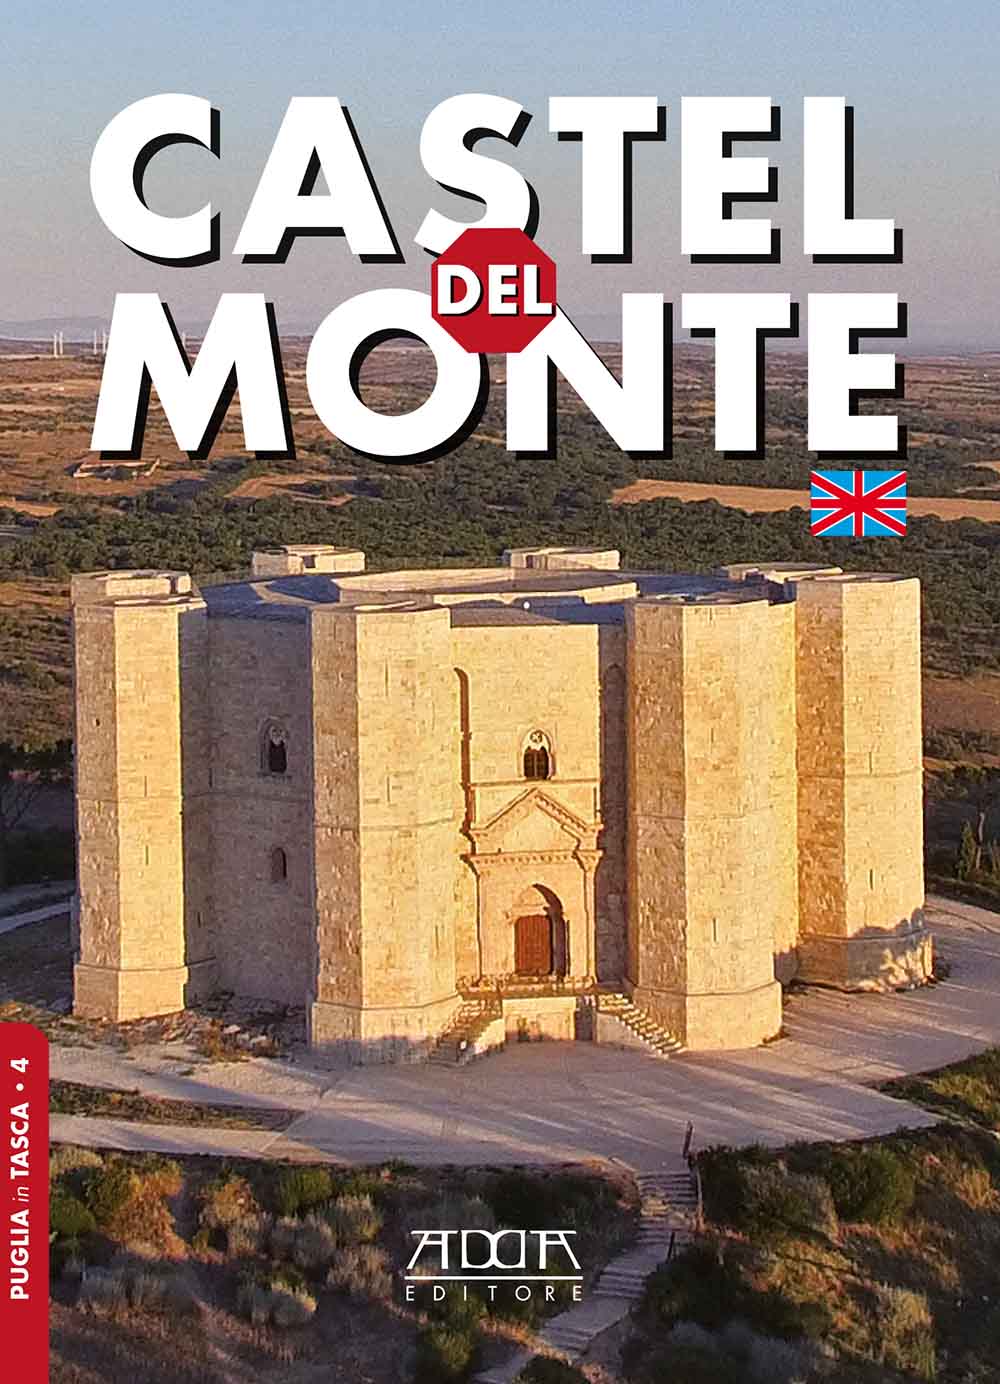 Castel del Monte | Tourist guide